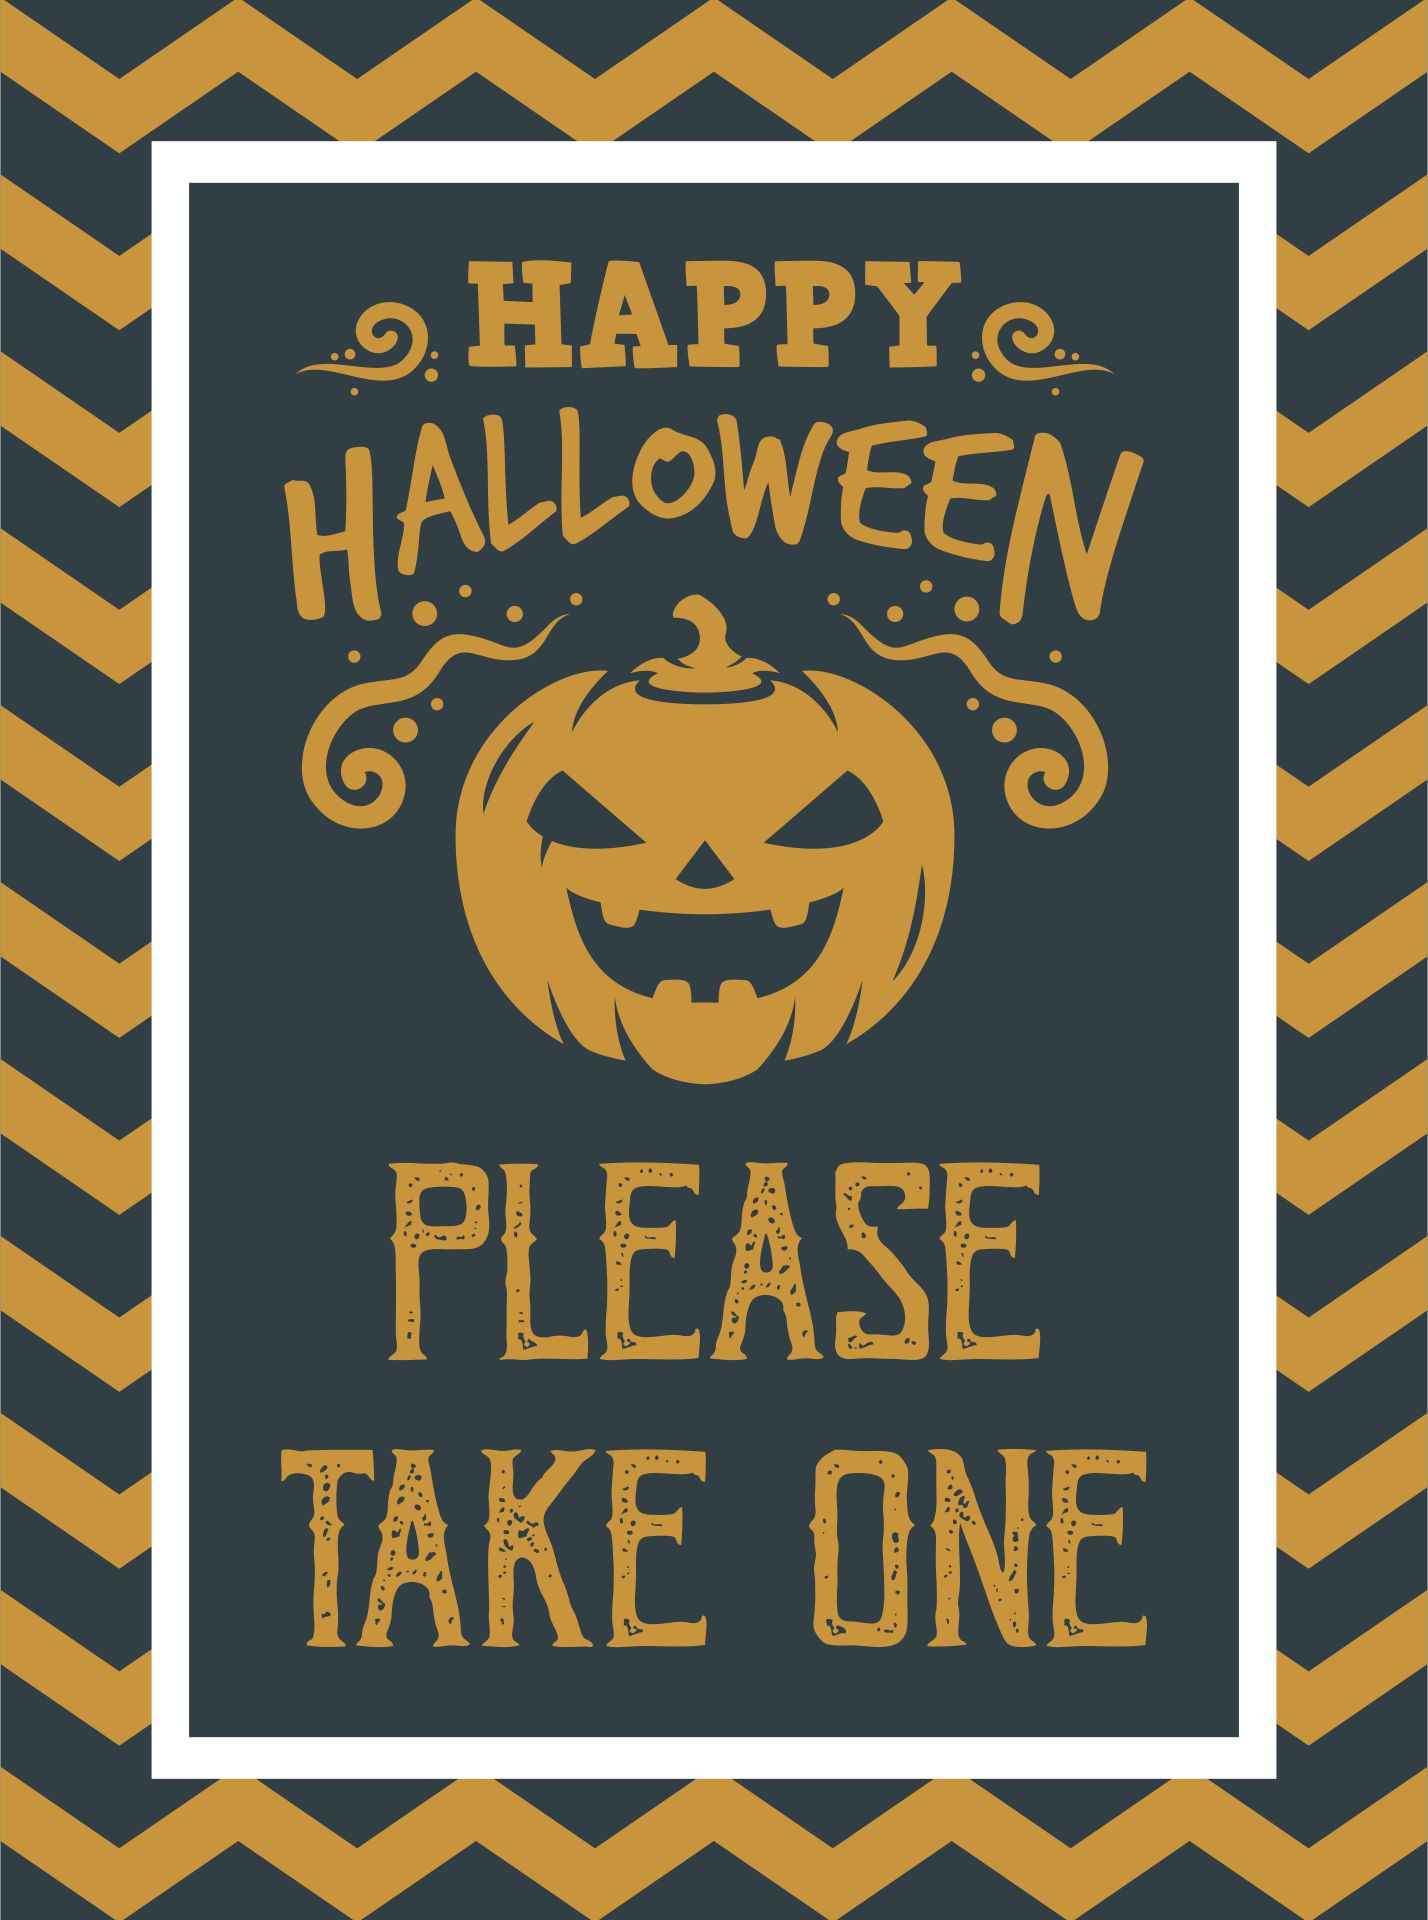 15-best-halloween-signs-printable-take-2-please-printablee